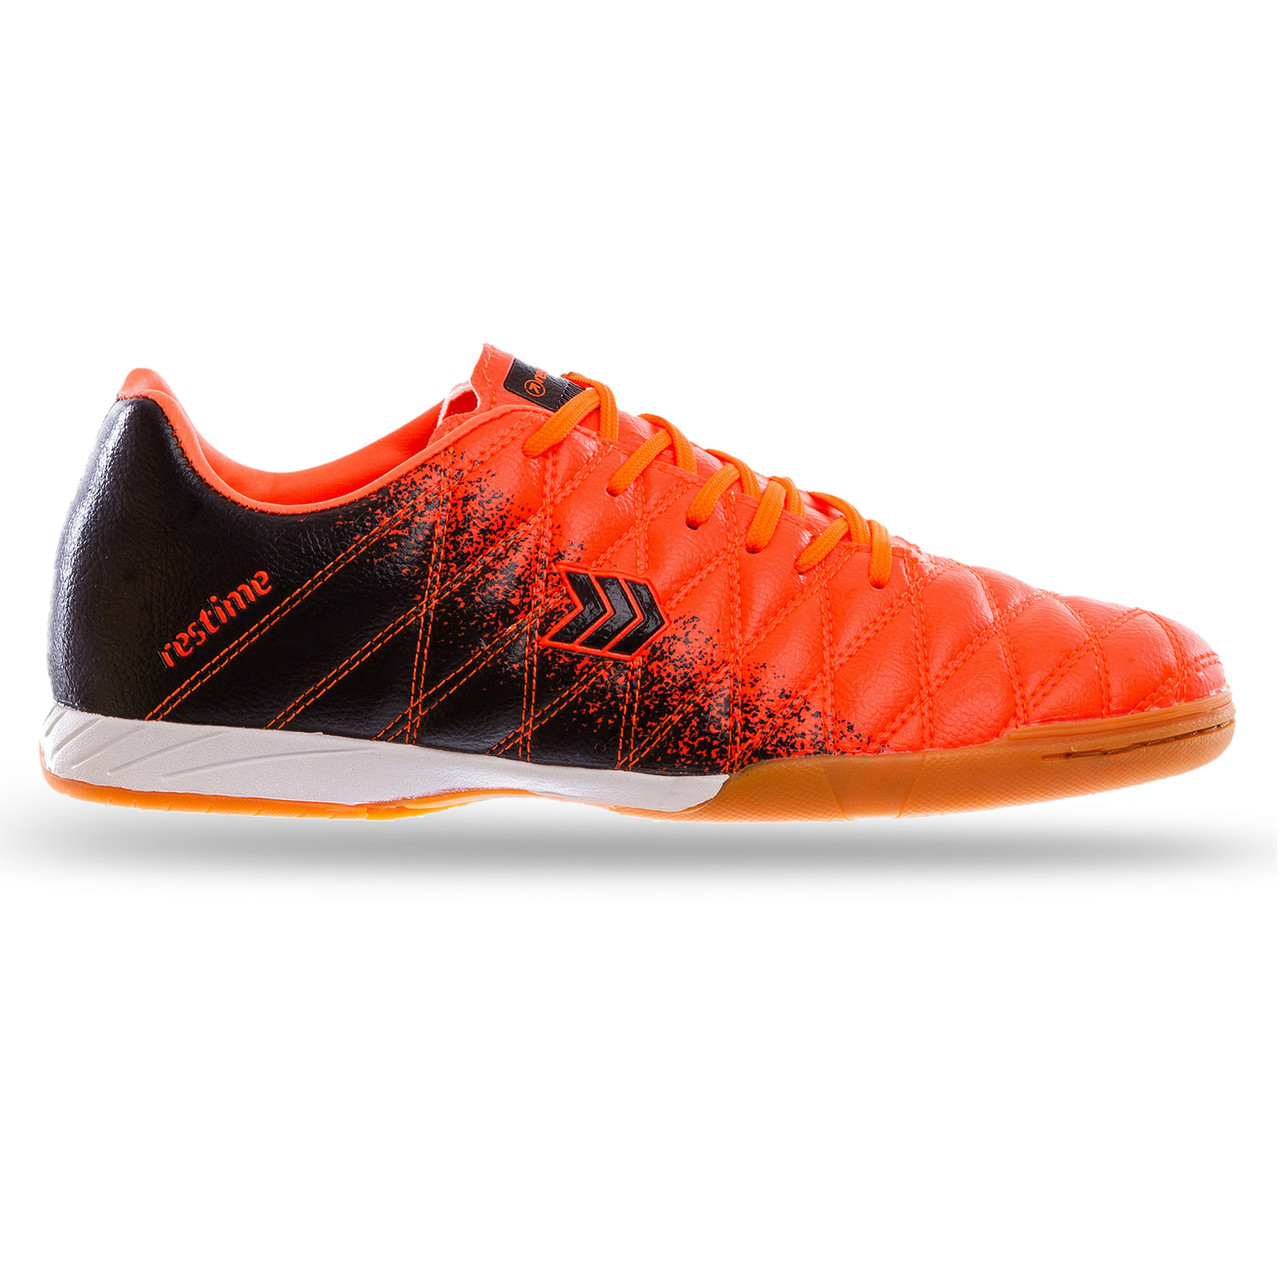 

Обувь для футзала DM019604 размер 41-45 (верх-PU, подошва-PU, цвета в ассортименте) Оранжевый-черный разные размеры 41-45